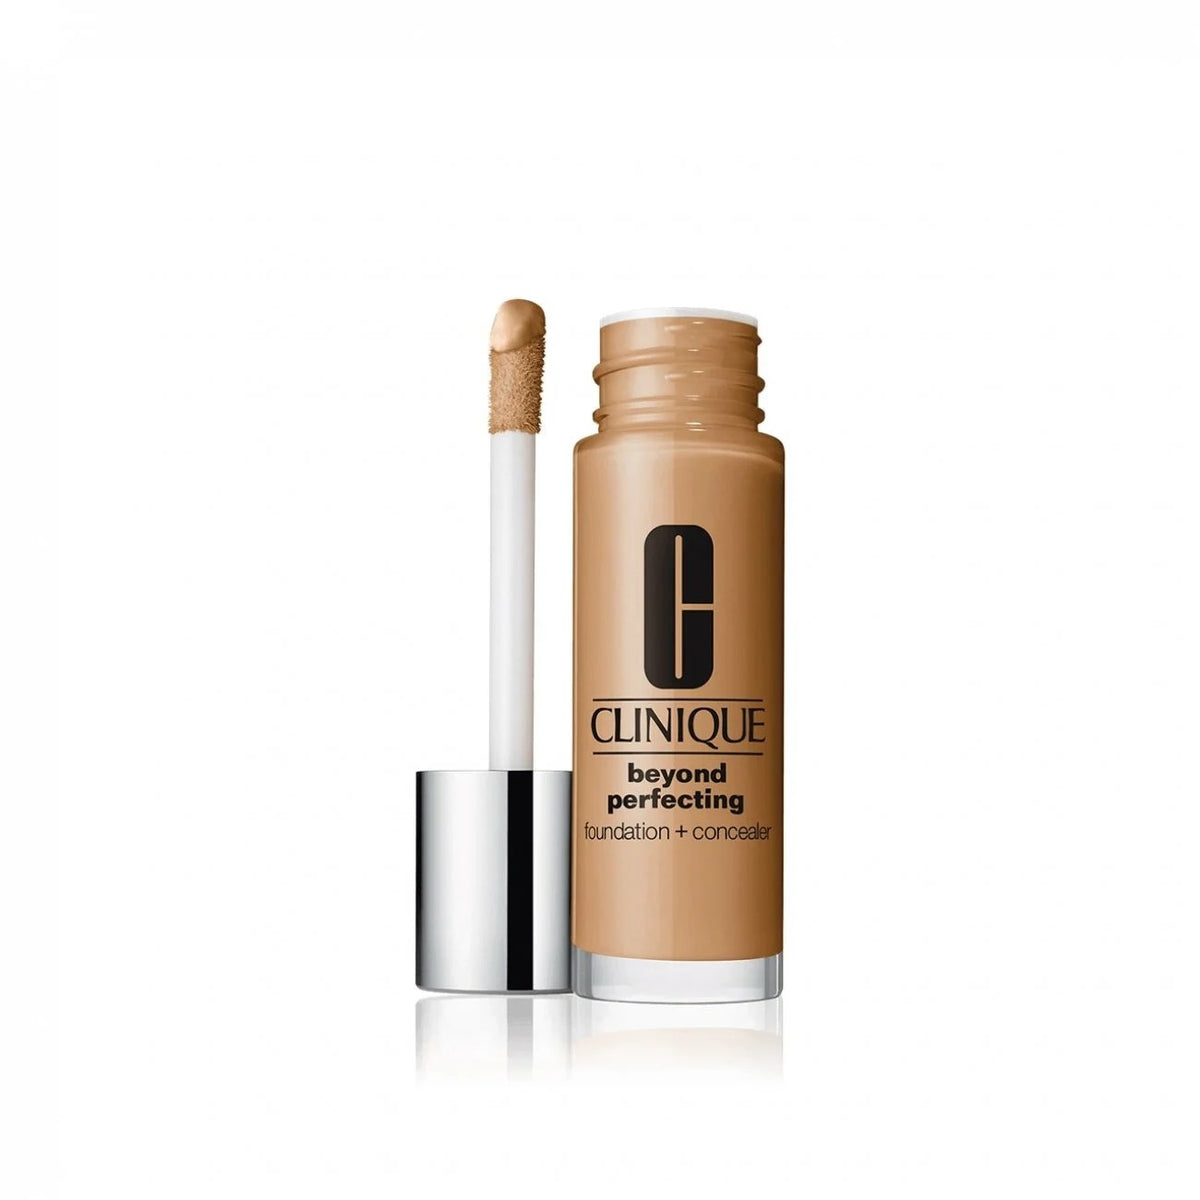 Clinique Beyond Perfecting Makeup Concealer קליניק מייקאפ וקונסילר במוצר אחד - GLAM42